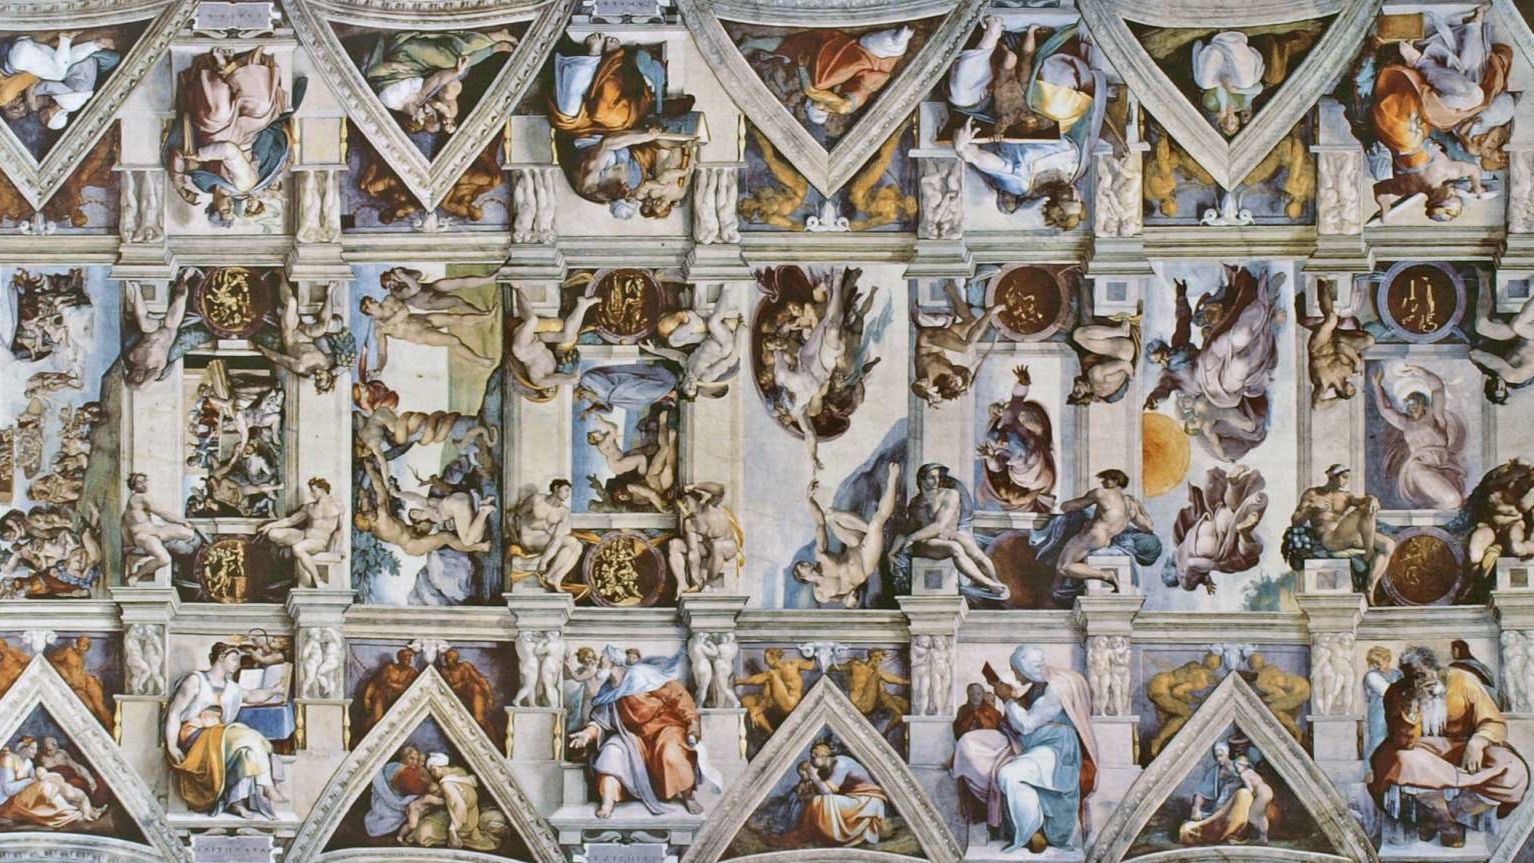 Conceptos erroneos comunes sobre el Renacimiento italiano